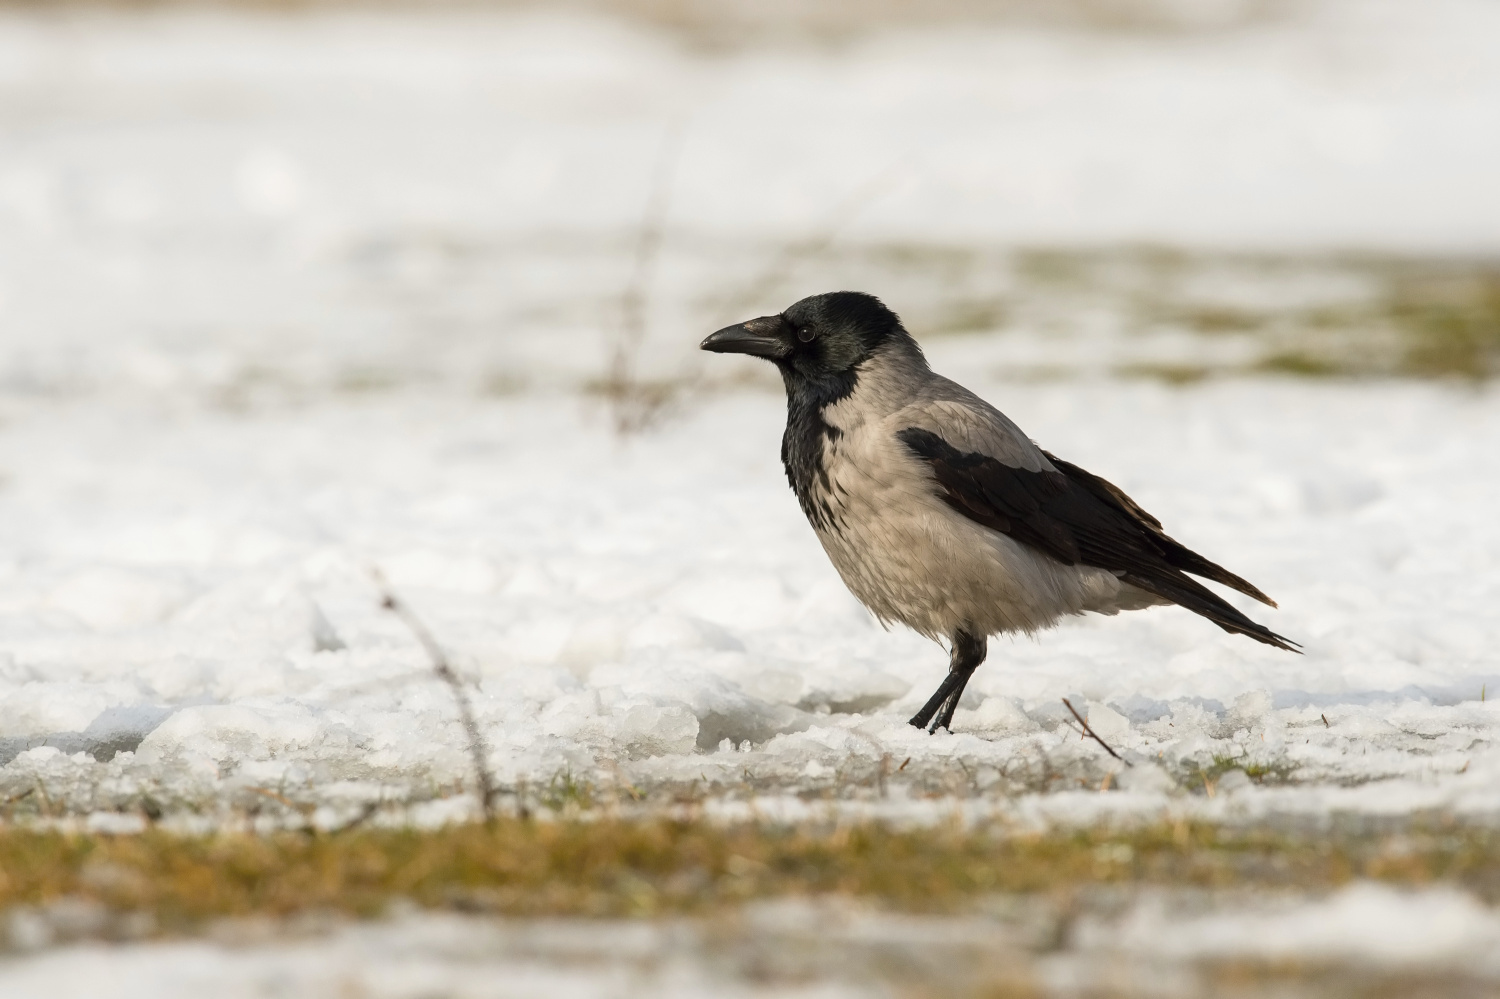 vrána obecná šedá (Corvus corone) Carrion crow